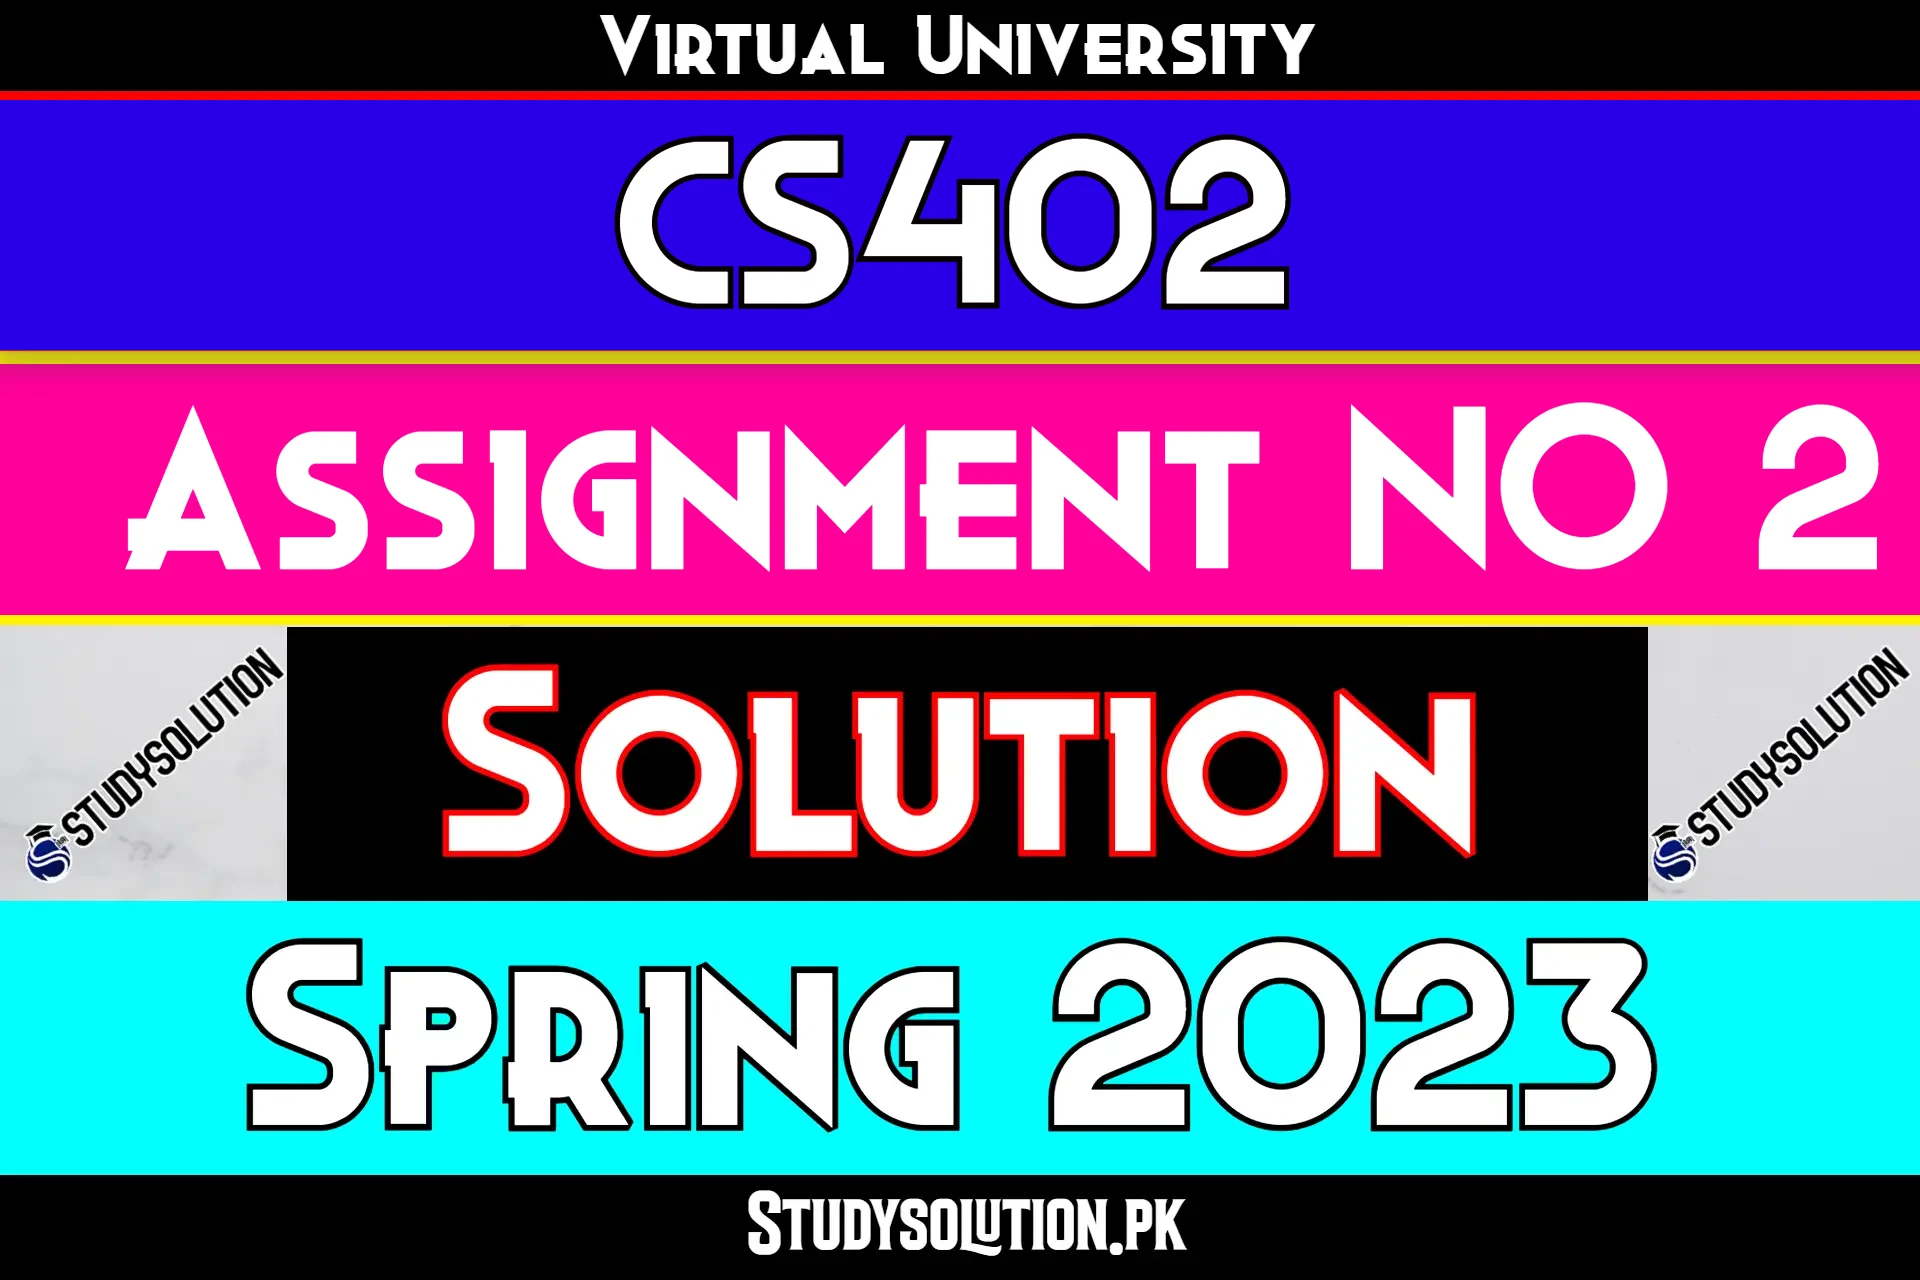 CS402 Assignment No 2 Solution Spring 2023